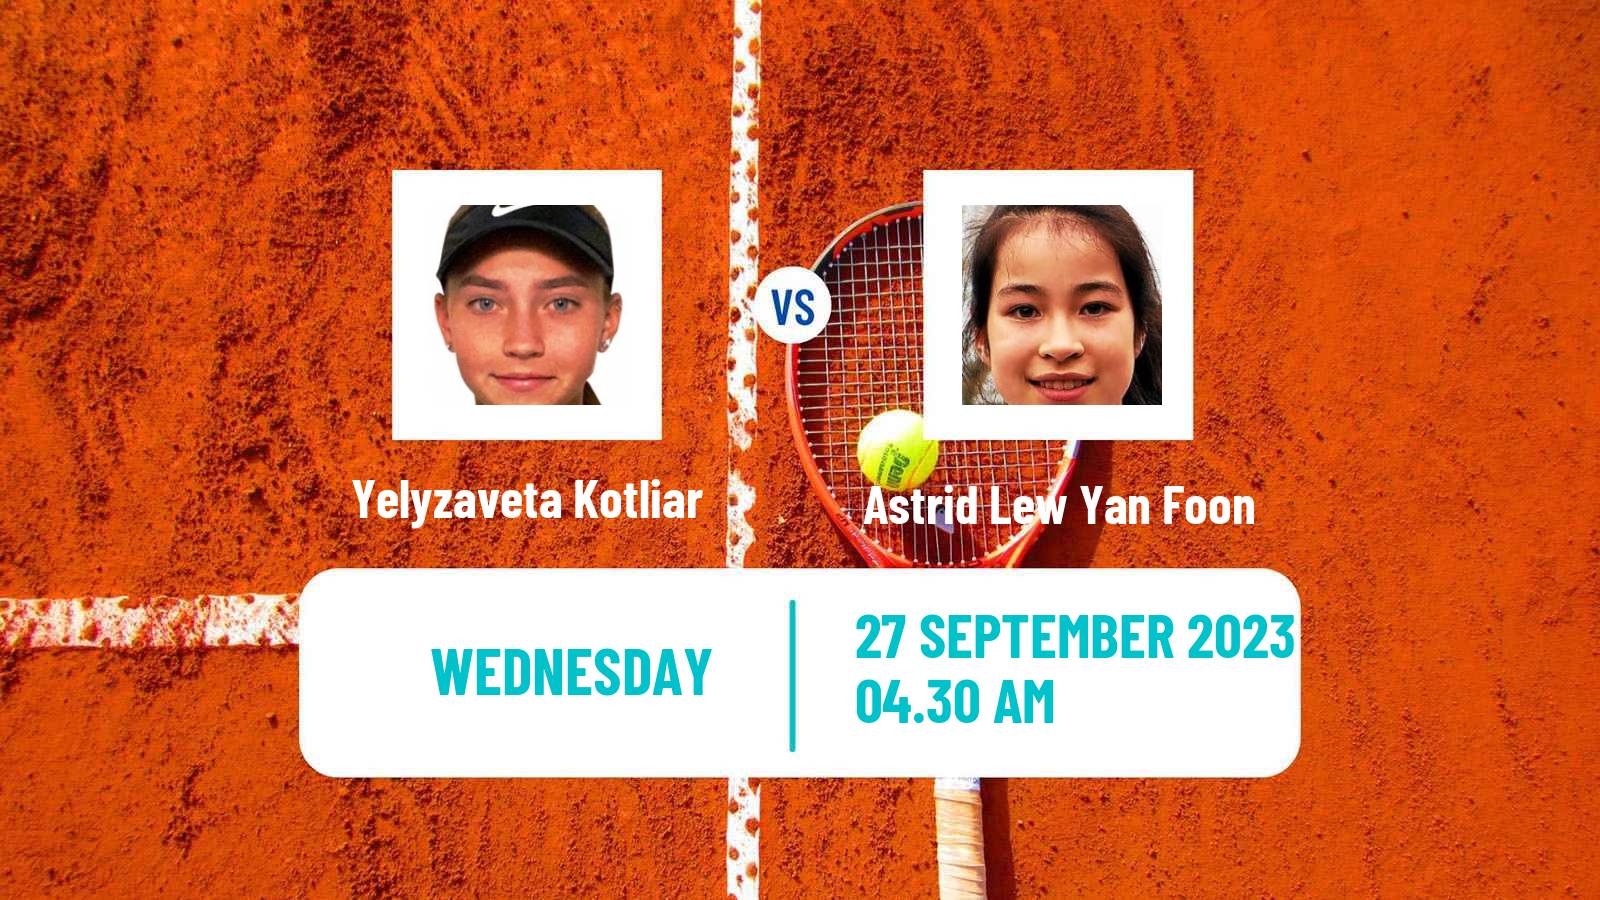 Tennis ITF W15 Monastir 34 Women Yelyzaveta Kotliar - Astrid Lew Yan Foon